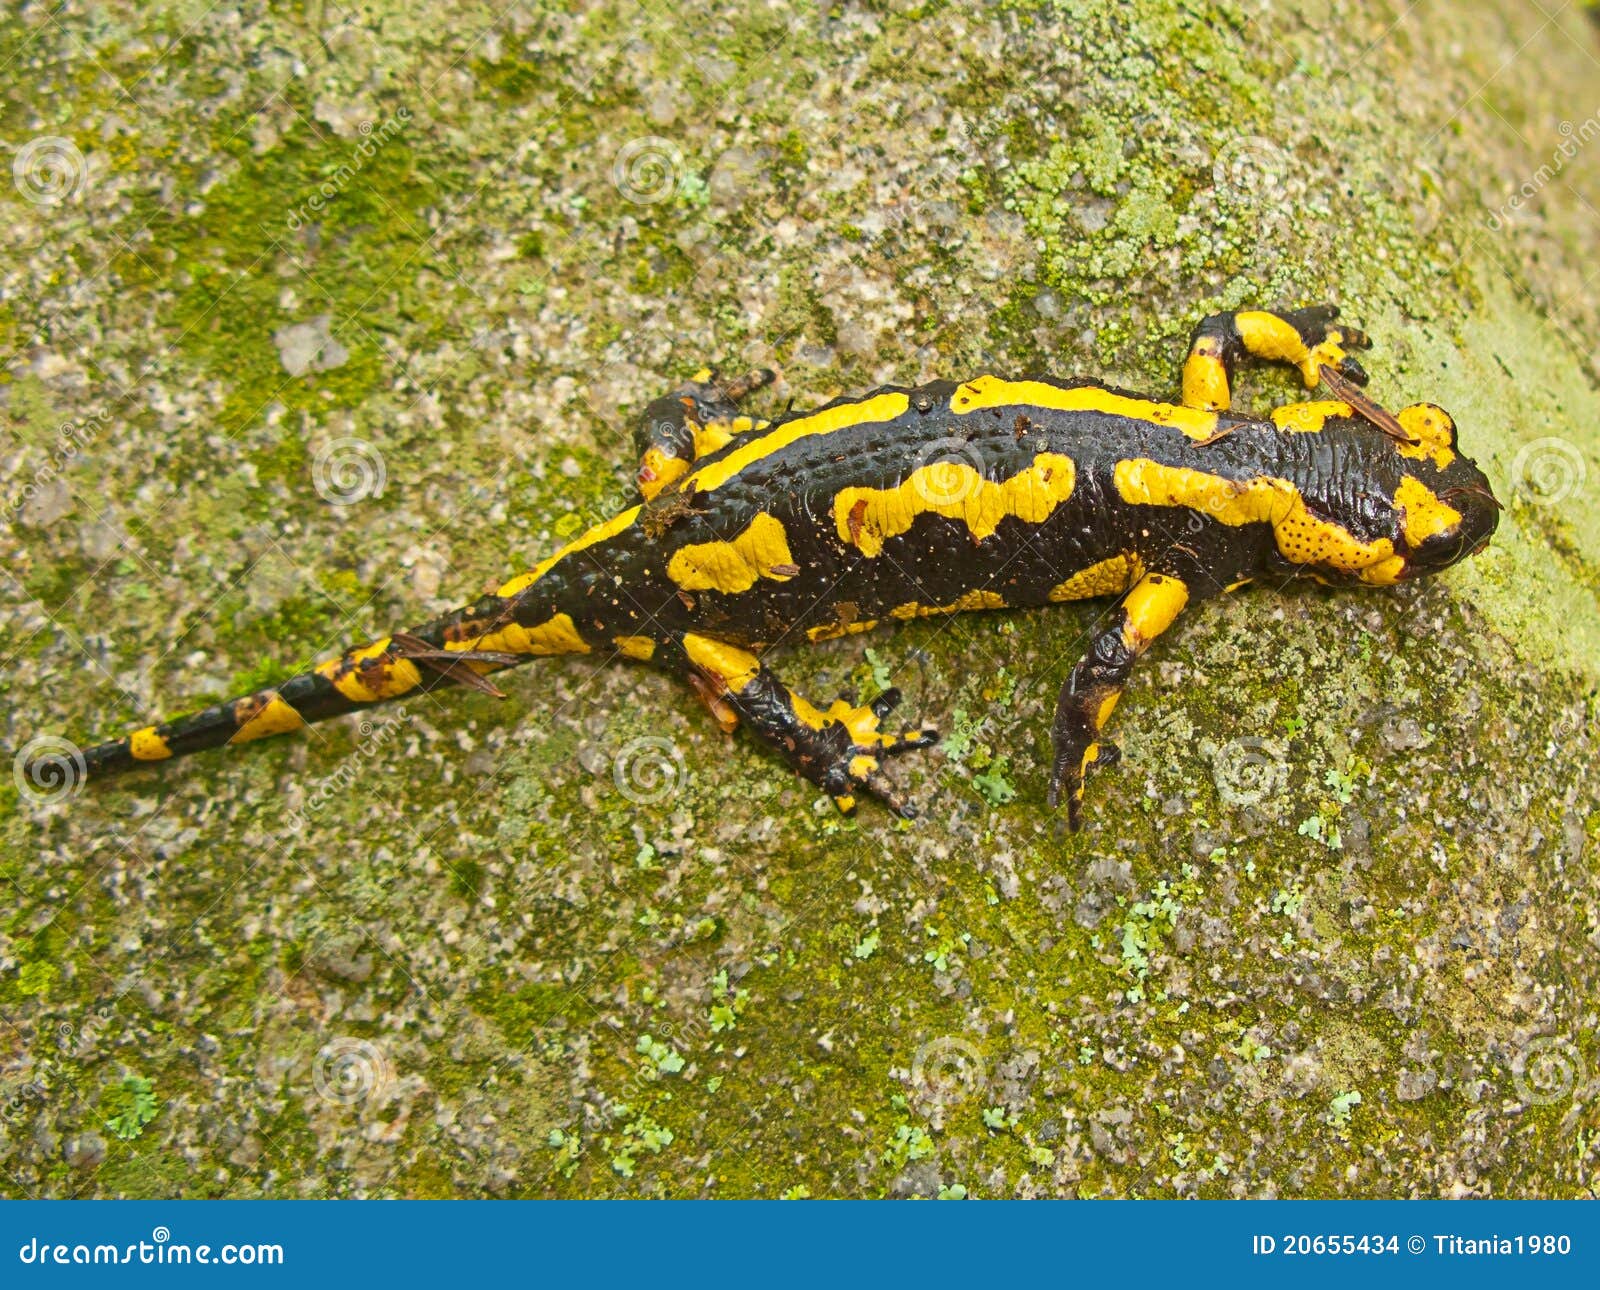 a yellow and black salamander